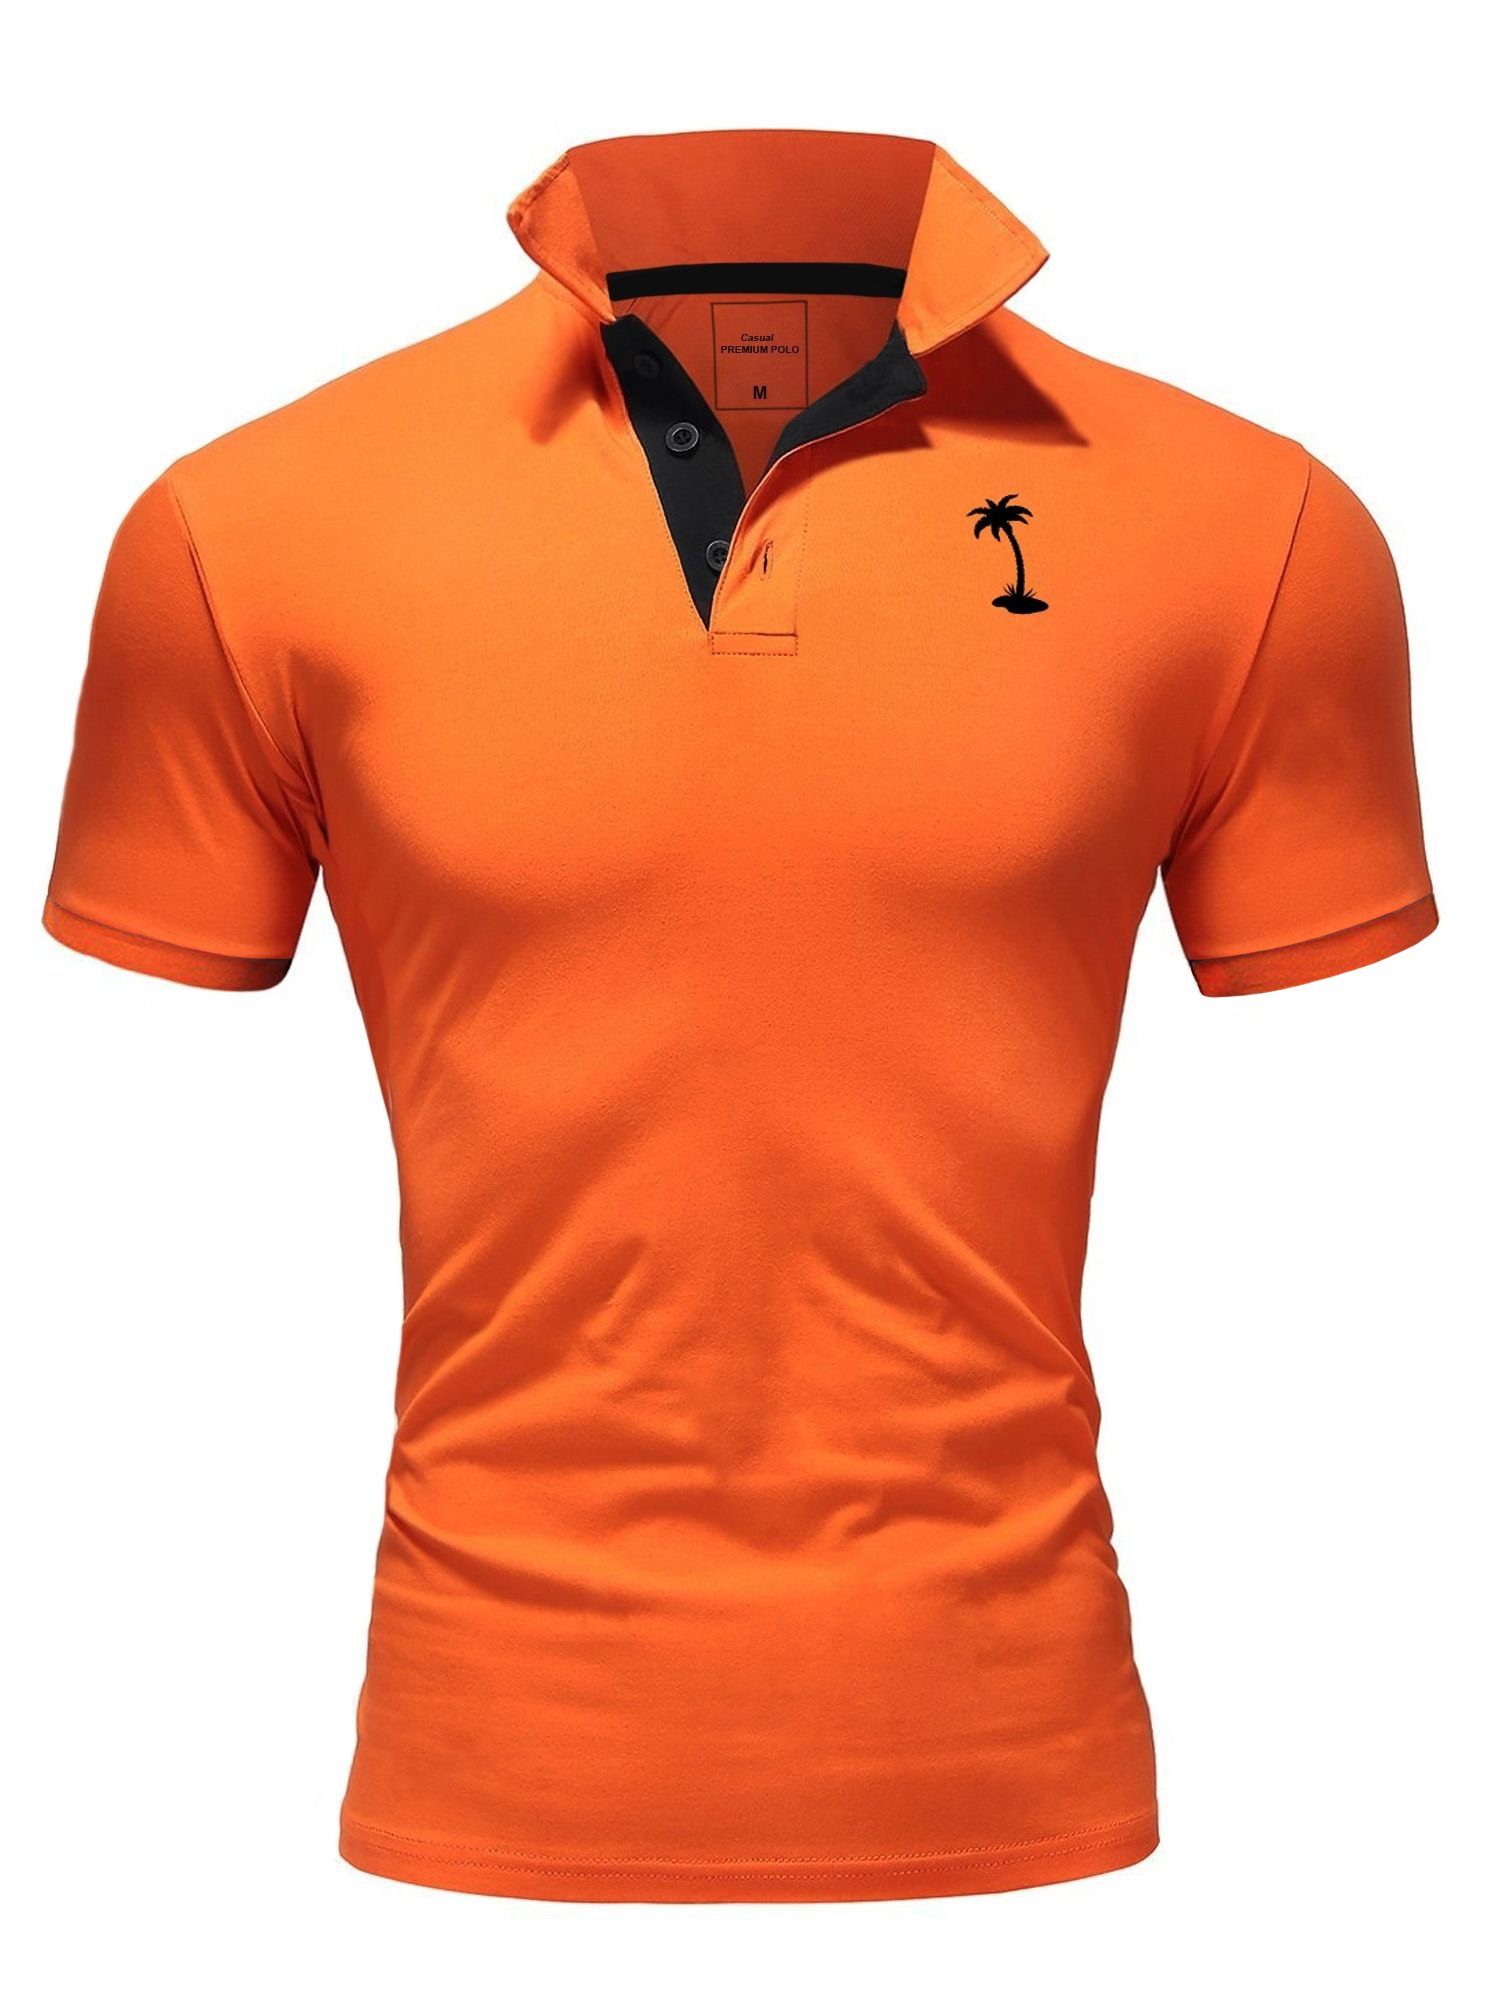 behype Poloshirt PALMSON mit kontrastfarbigen Details orange-schwarz